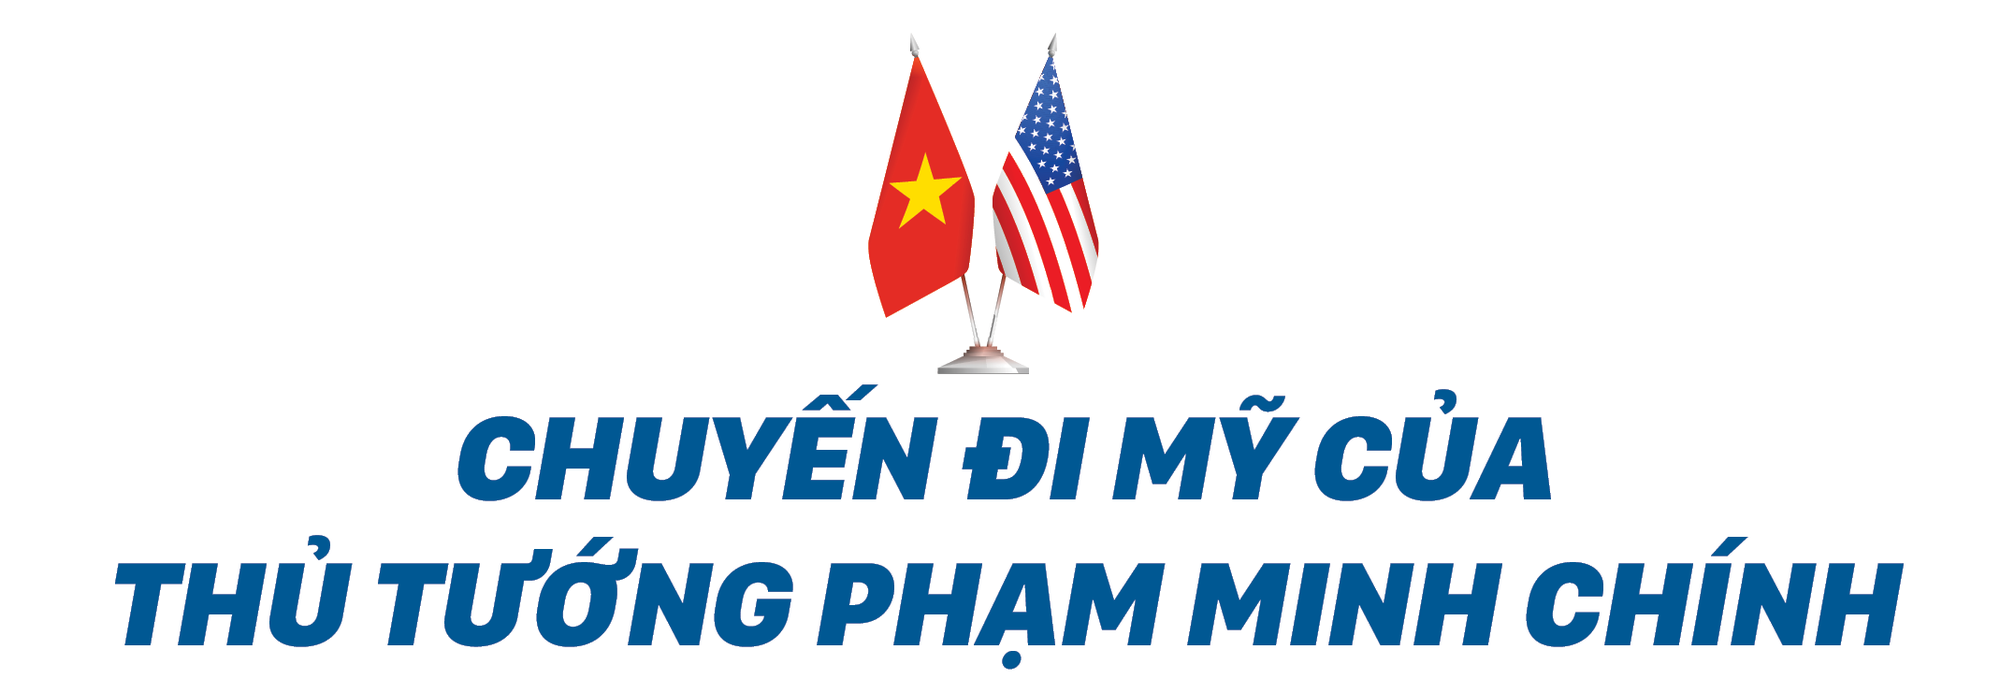 10 năm đối tác toàn diện Việt - Mỹ: Biểu tượng và thực tế - Ảnh 1.